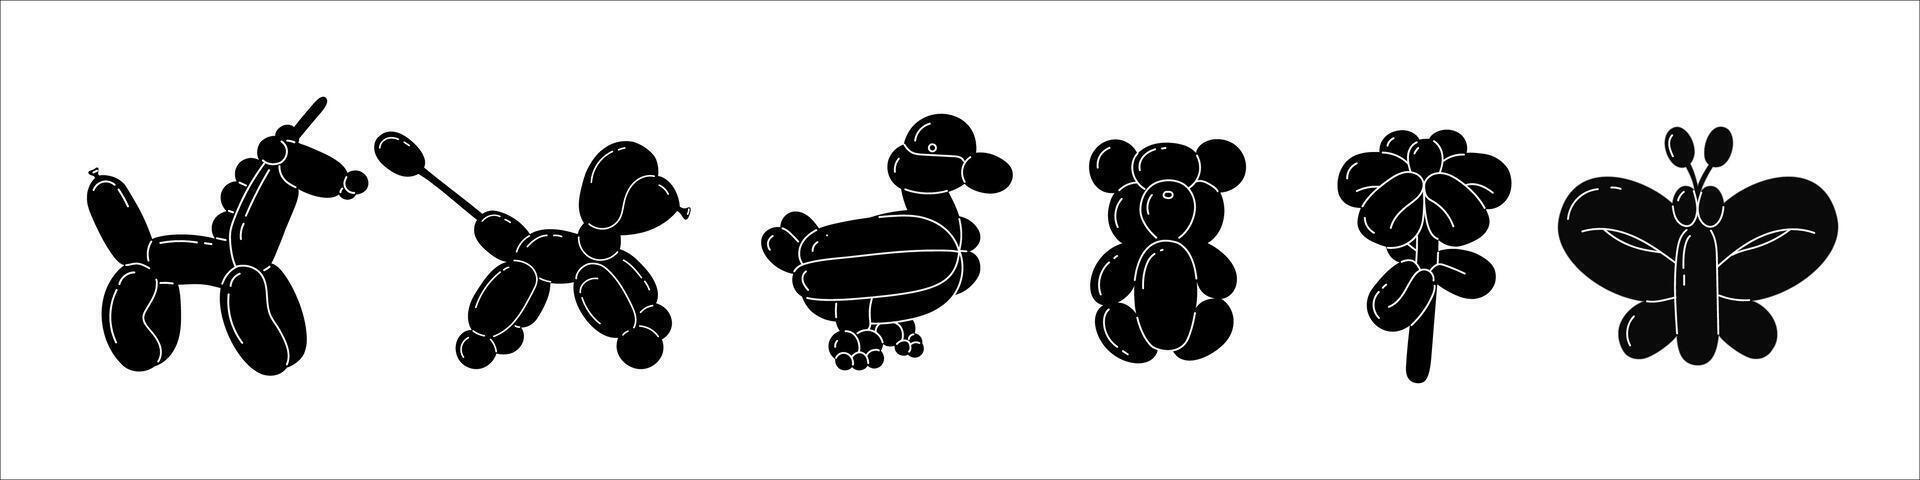 colección de negro animales hecho desde globos y pegatinas con burbujas en de moda retro 2000 estilo. vector